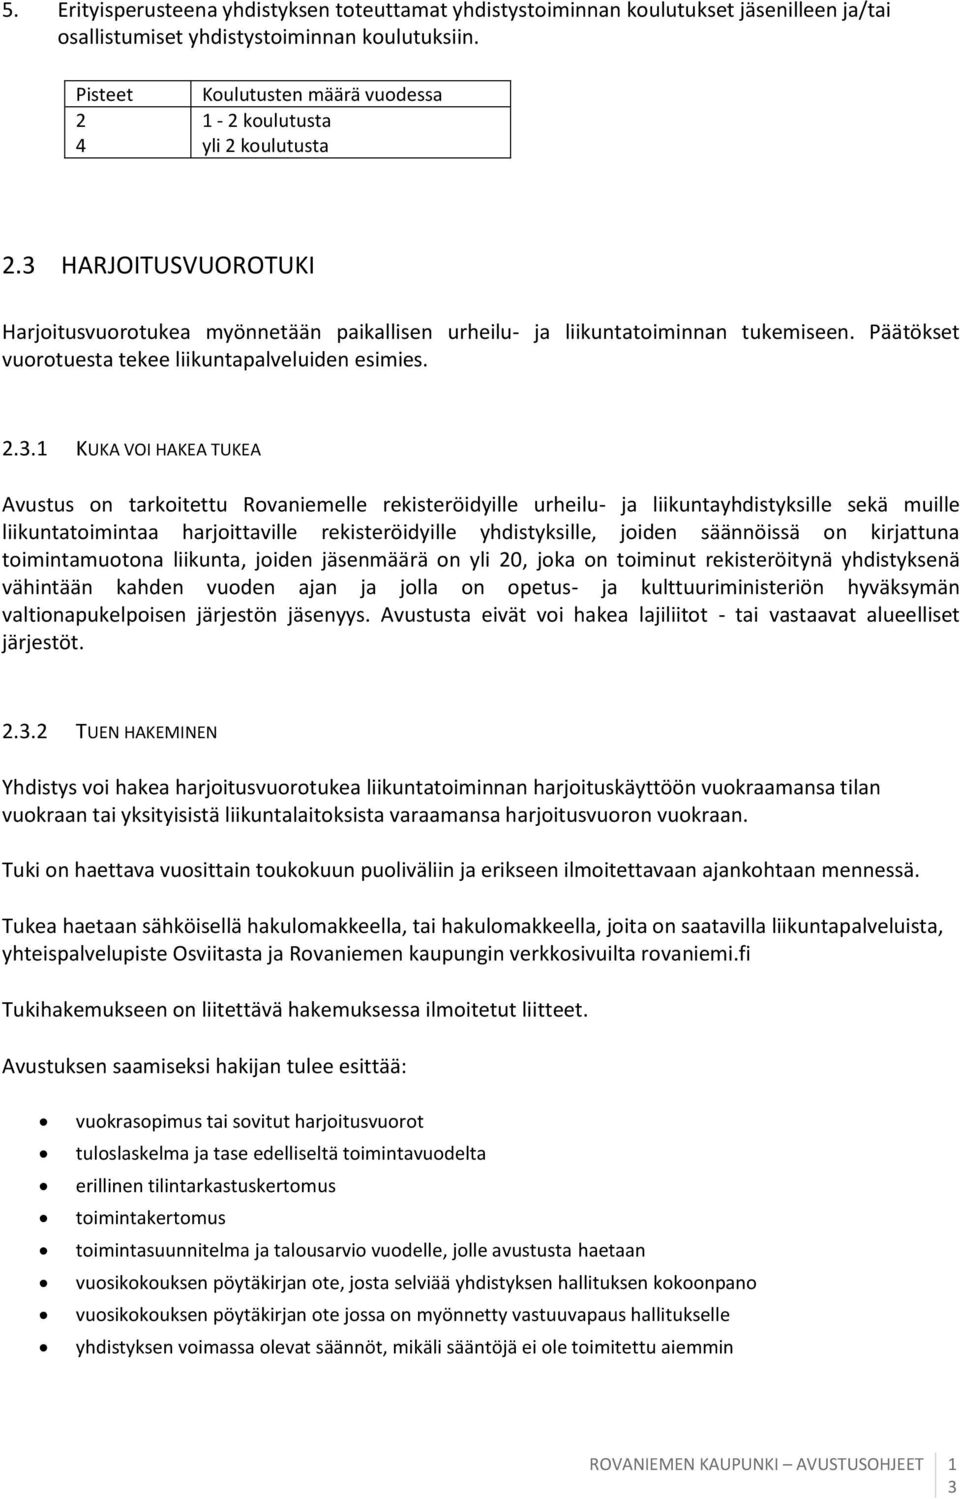 .. KUKA VOI HAKEA TUKEA Avustus on tarkoitettu Rovaniemelle rekisteröidyille urheilu- ja liikuntayhdistyksille sekä muille liikuntatoimintaa harjoittaville rekisteröidyille yhdistyksille, joiden